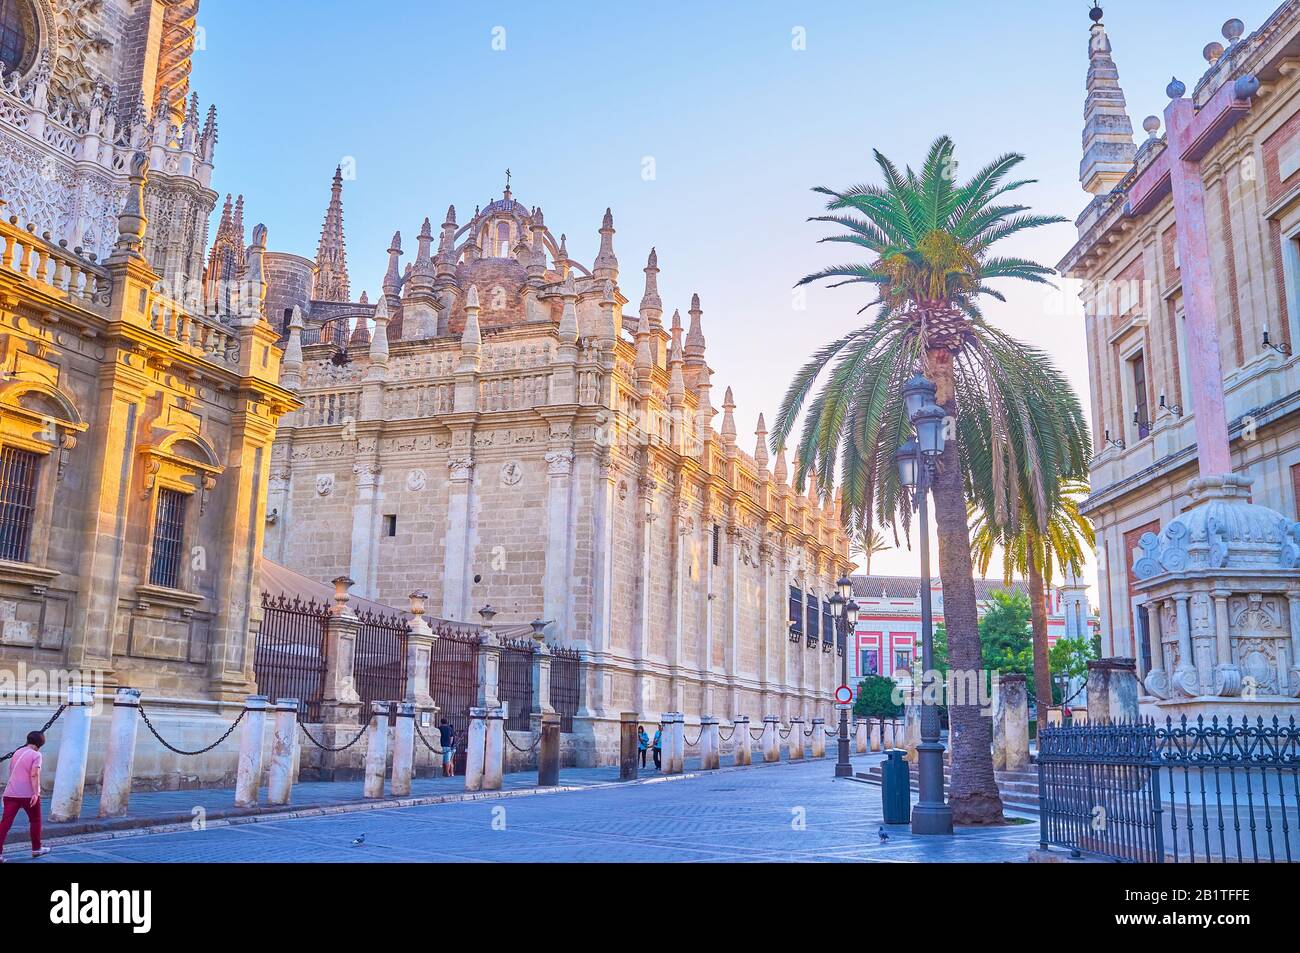 Sevilla, ESPAÑA - 1 DE OCTUBRE de 2019: El paseo a lo largo de las grandes murallas de la Catedral con impresionantes decoraciones de estilo gótico, el 1 de octubre en Sevilla Foto de stock